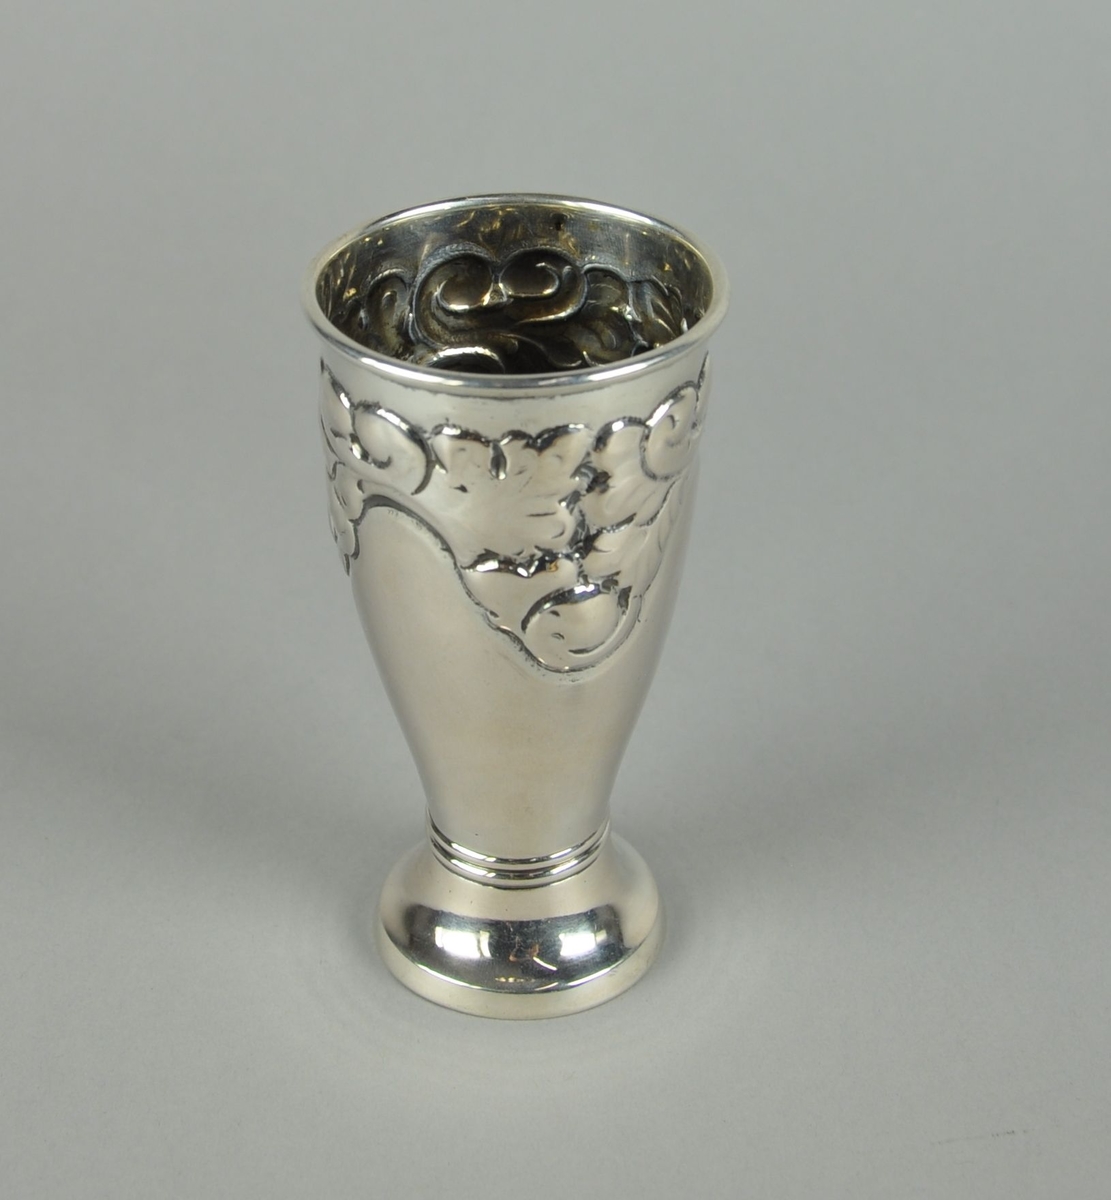 Pokal av sølv. Pokalen har sylindrisk form med innsnevret bunn. Utgående sokkel med to dekorative linjer. Øverst har pokalen akantuslignende gravert dekor.